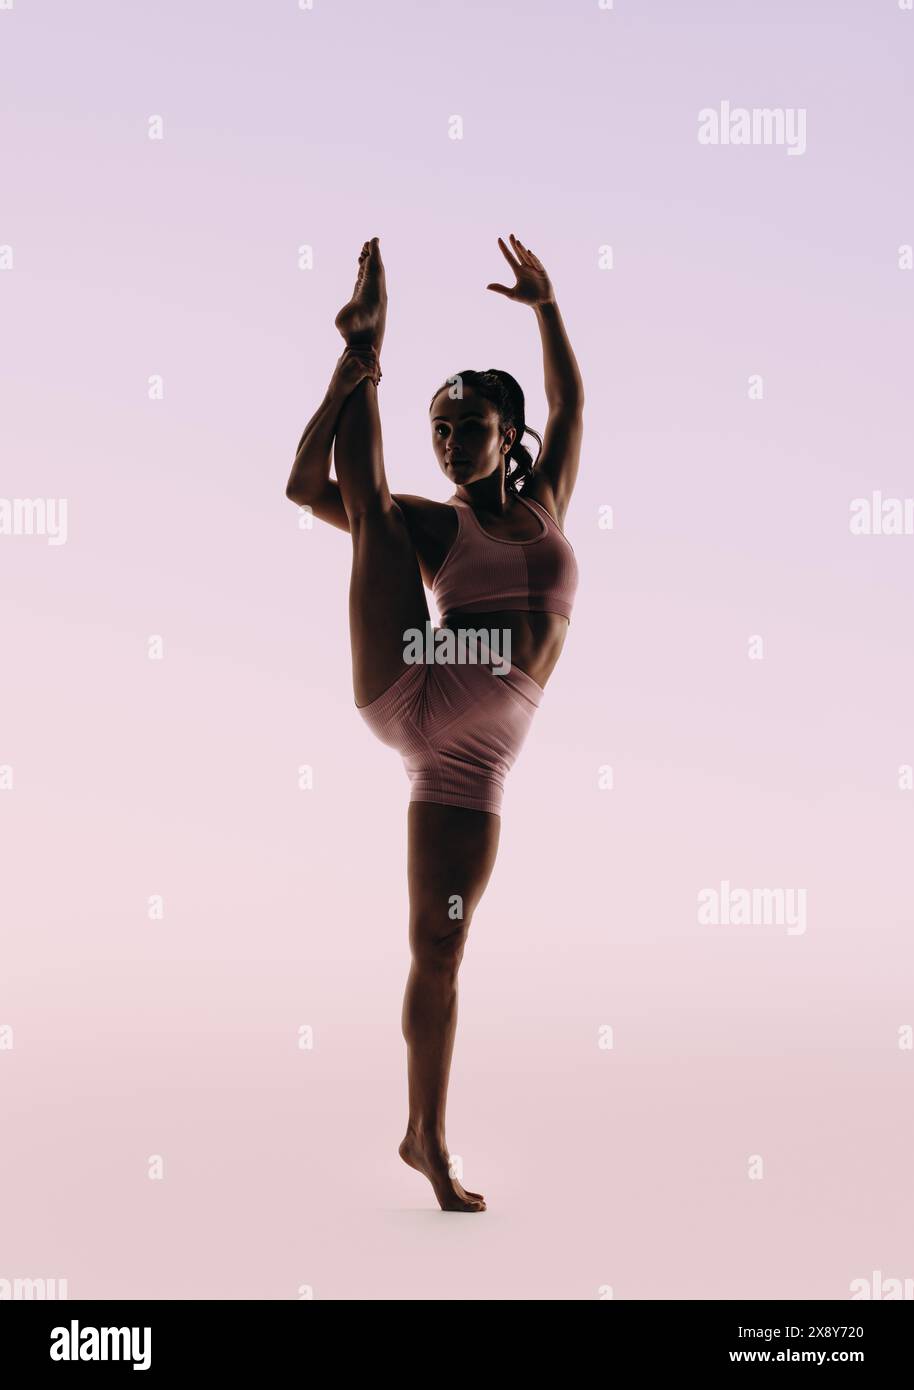 Die FIT-Ballerina zeigt ihr Können und ihre Flexibilität in einer klassischen Tanzroutine. Mit perfektem Gleichgewicht und schlanker Körperhaltung schlägt sie eine einbeinige Pose, di Stockfoto